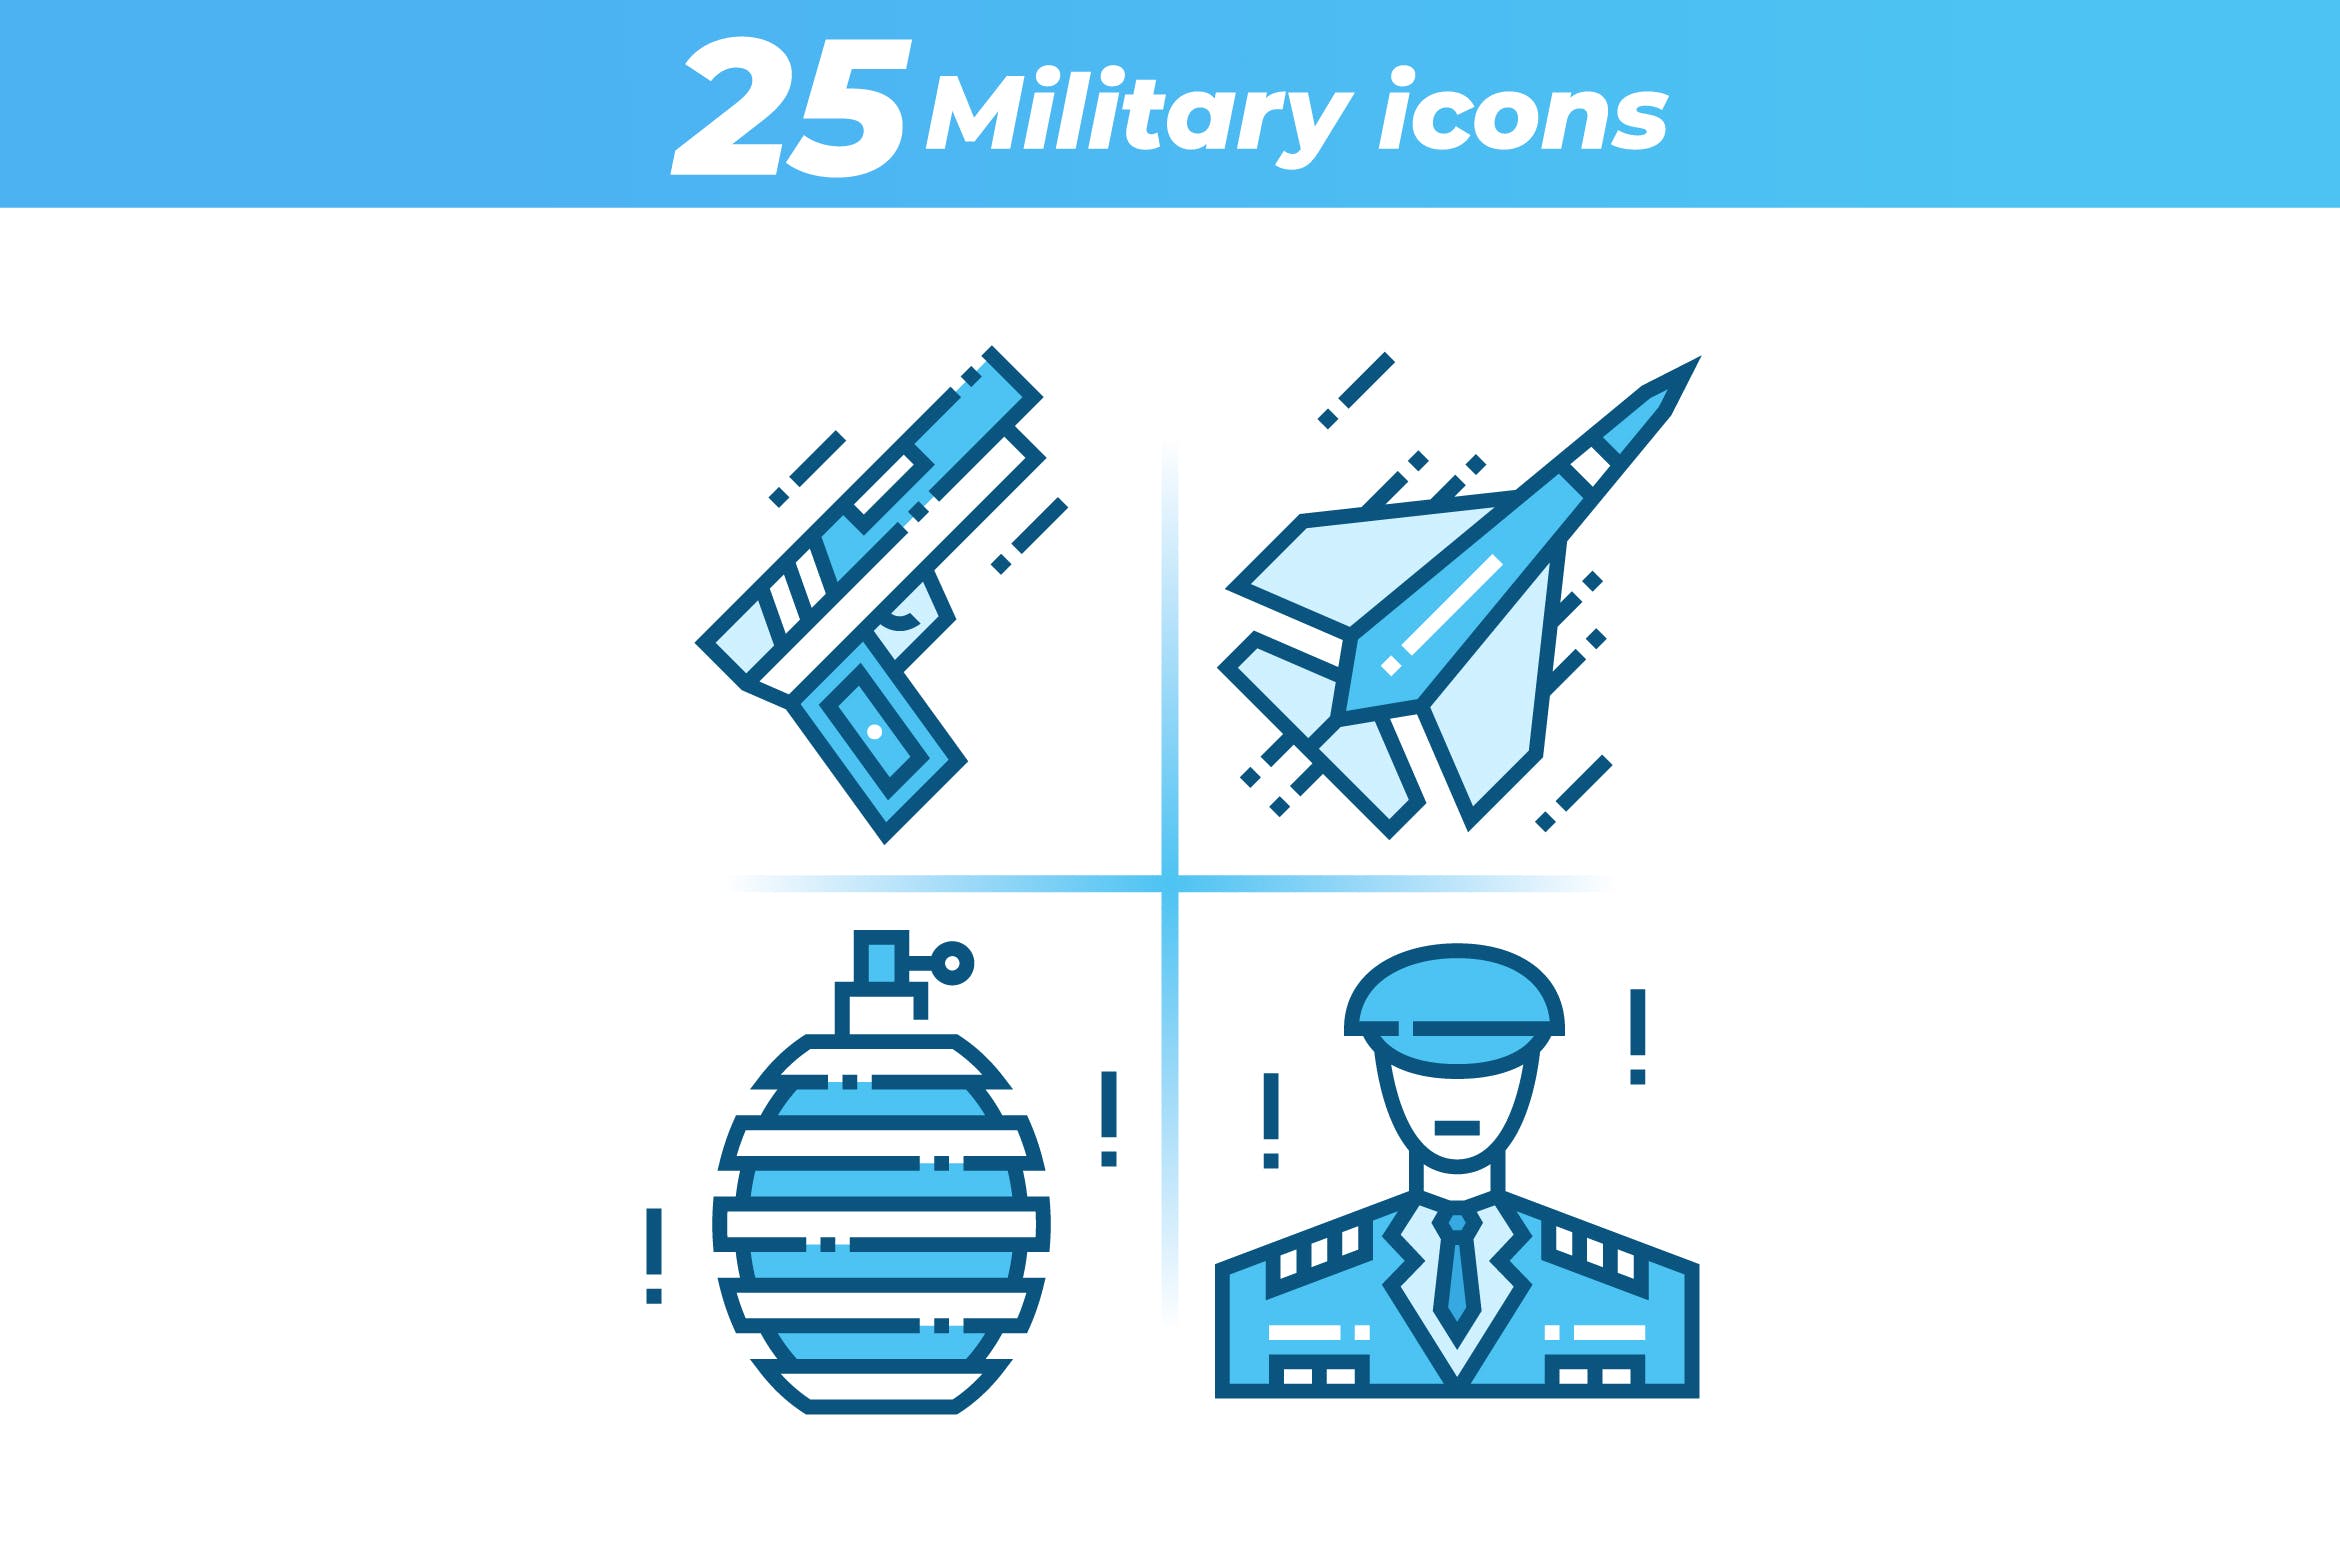 25枚军事主题矢量16图库精选图标 25 Military Icons插图